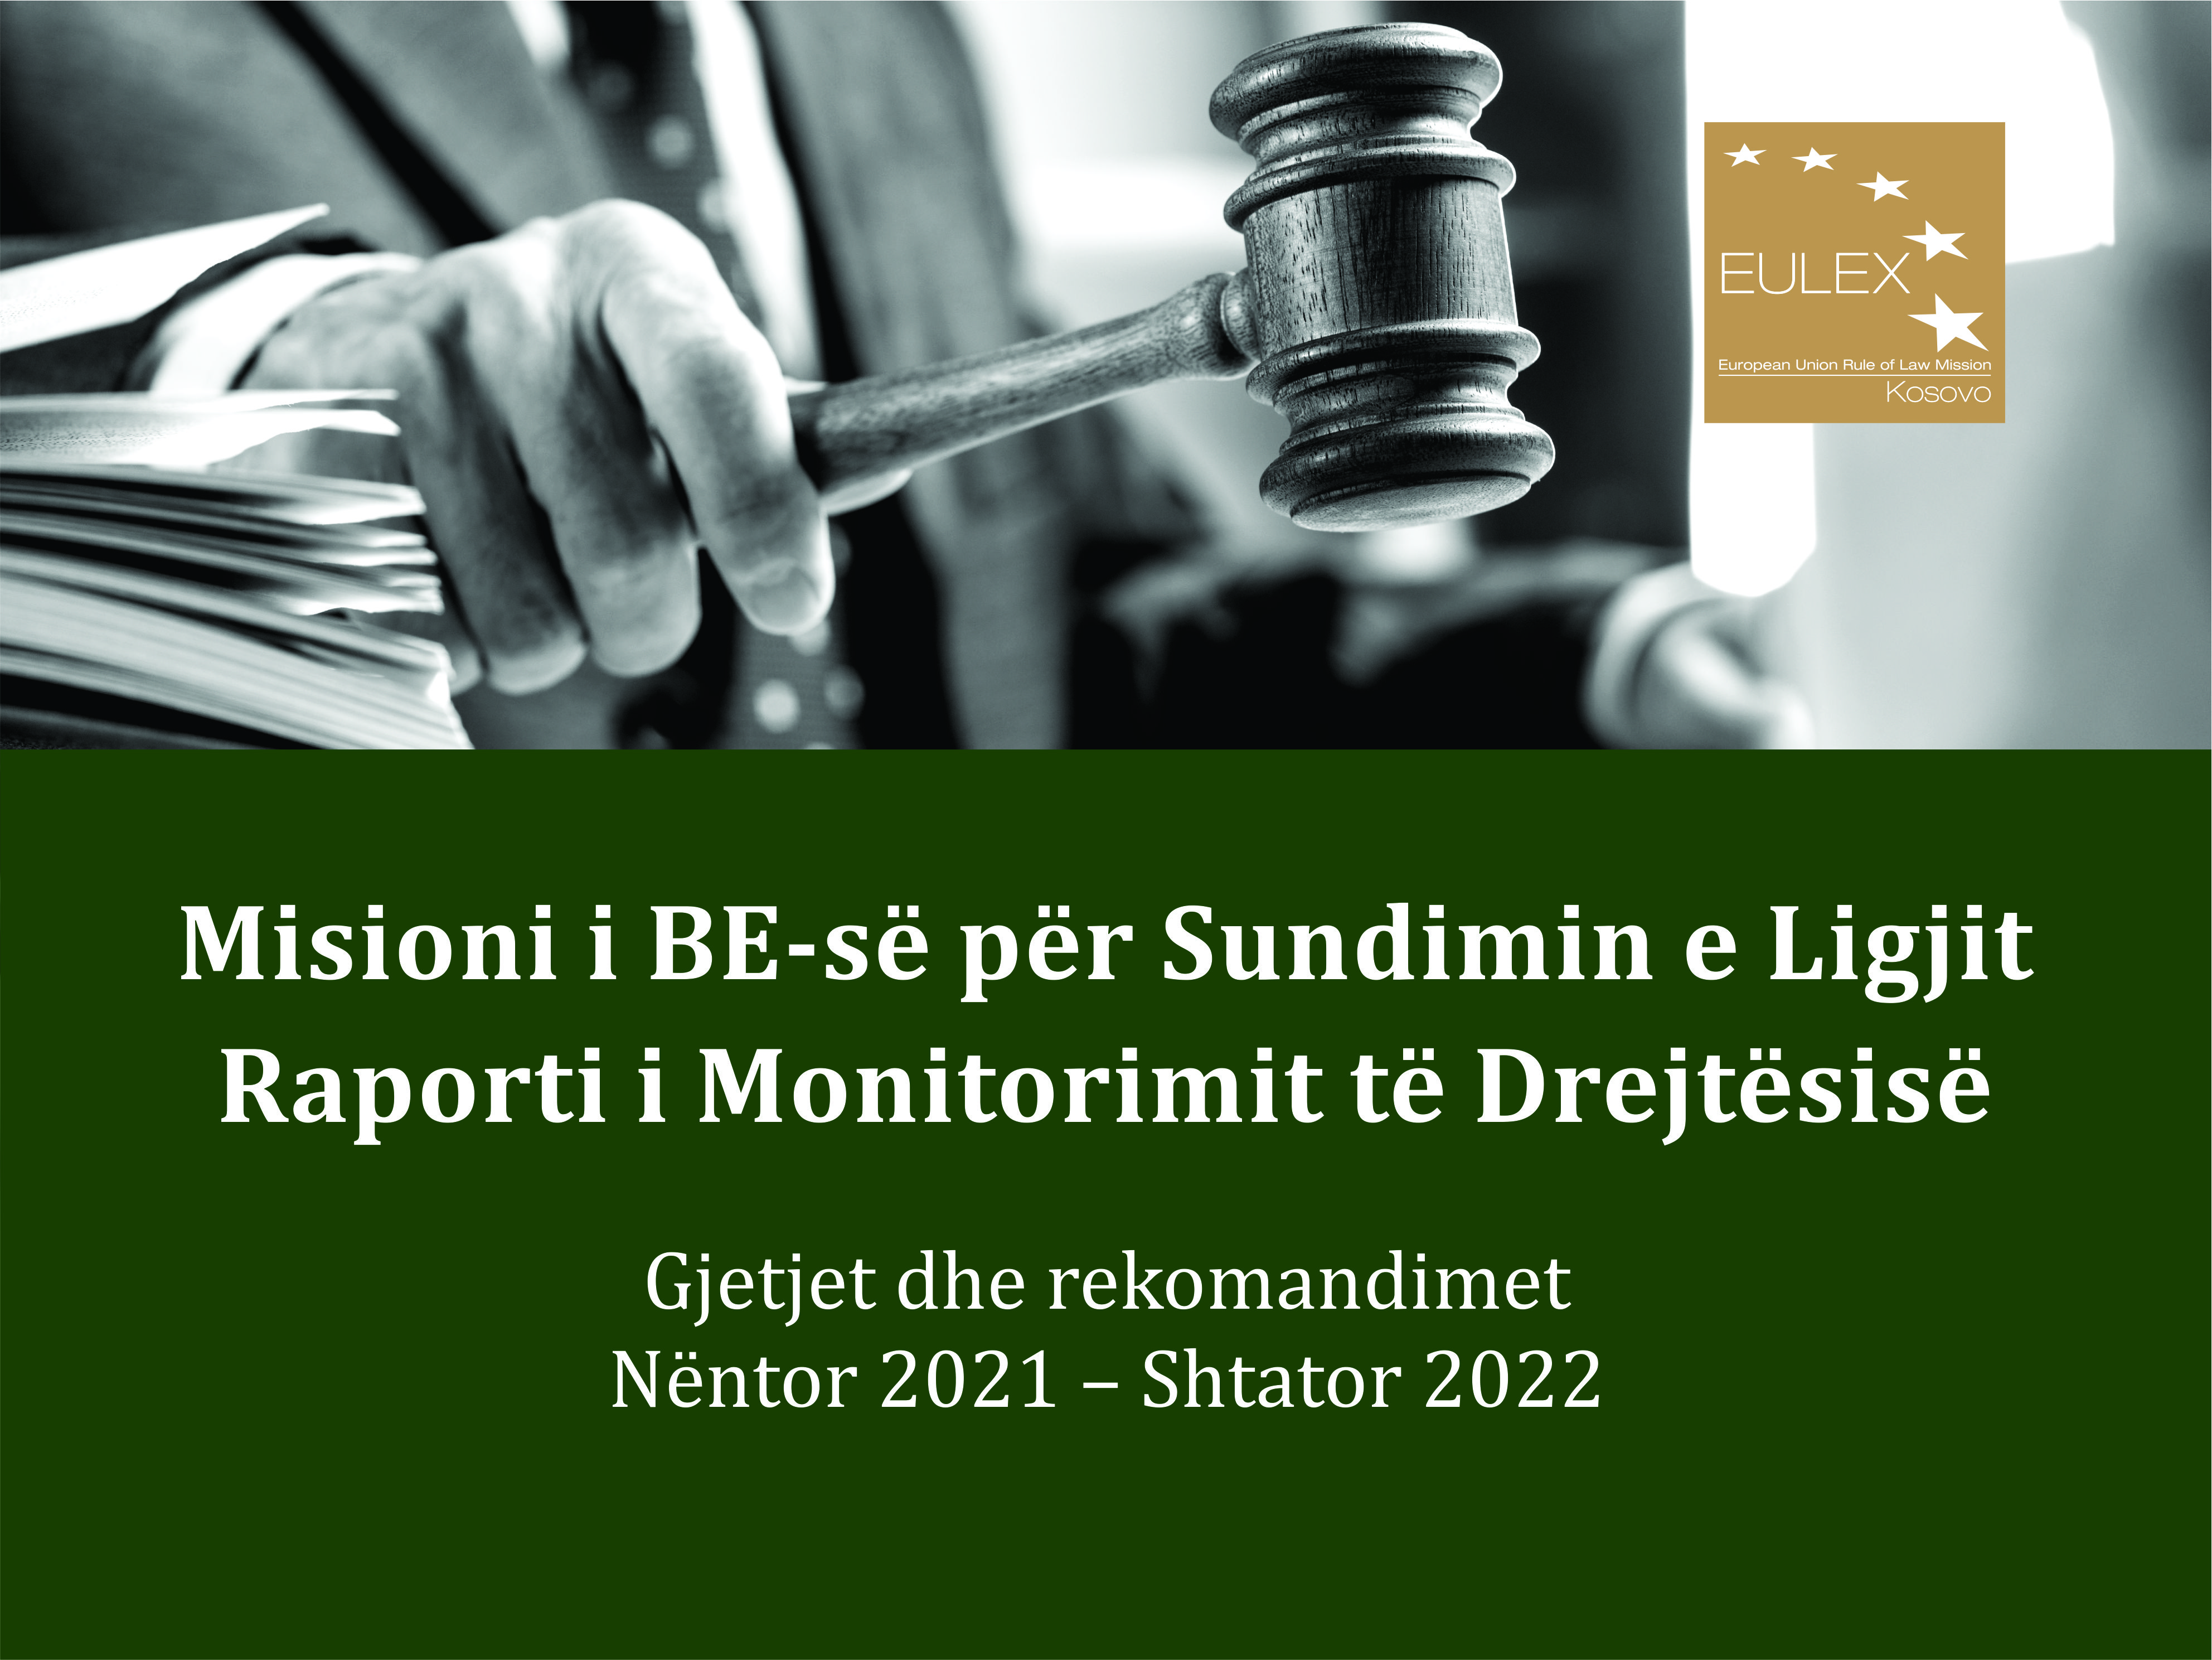 Raporti i EULEX-it për Monitorimin e Drejtësisë